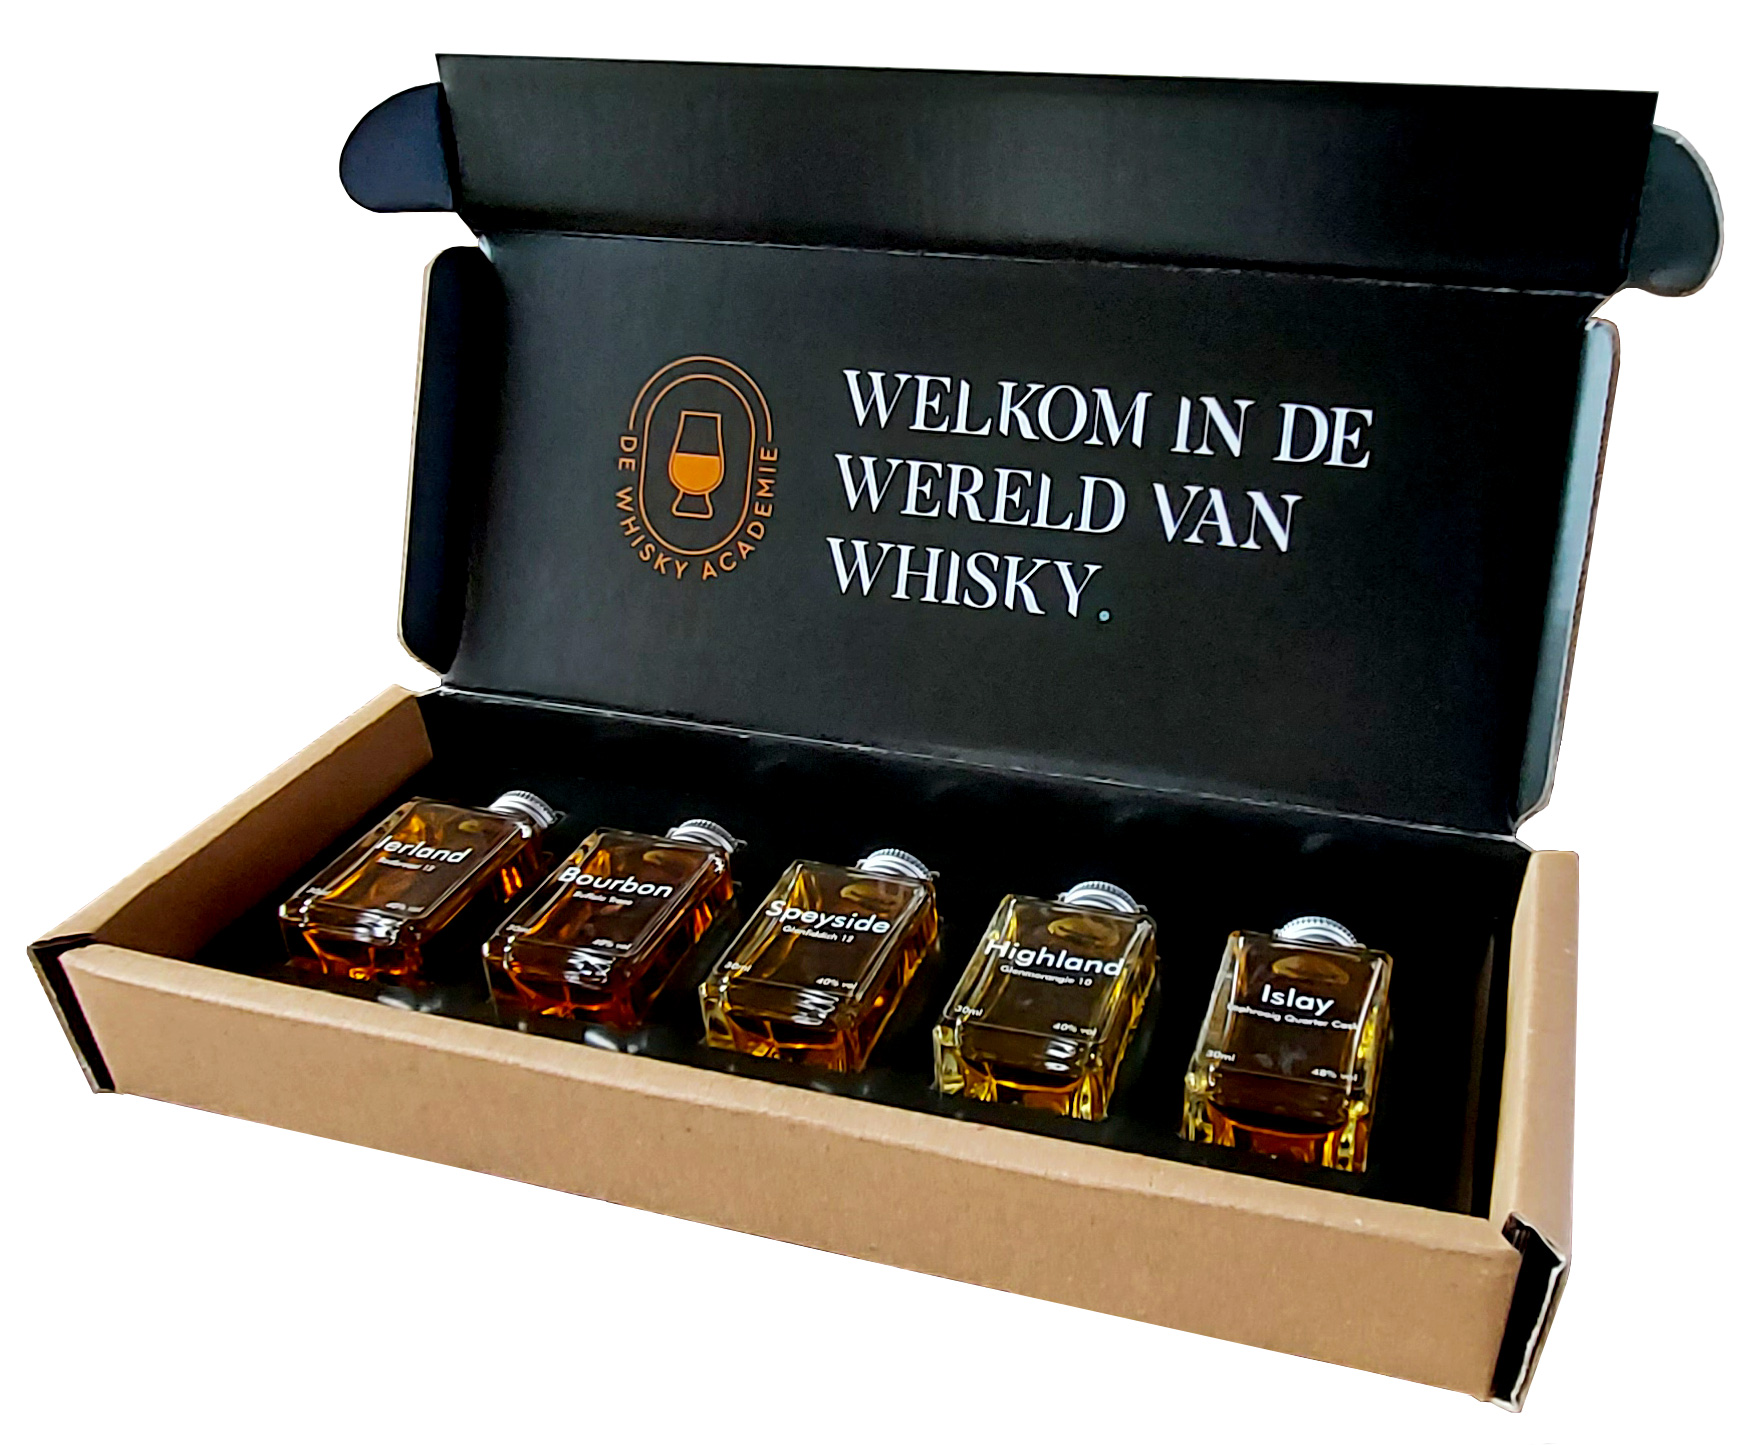 vernieuwen Modderig studie Ontdek whisky met de proefpakketten van dewhiskyacademie.nl -  lkkretenendrinken.nl